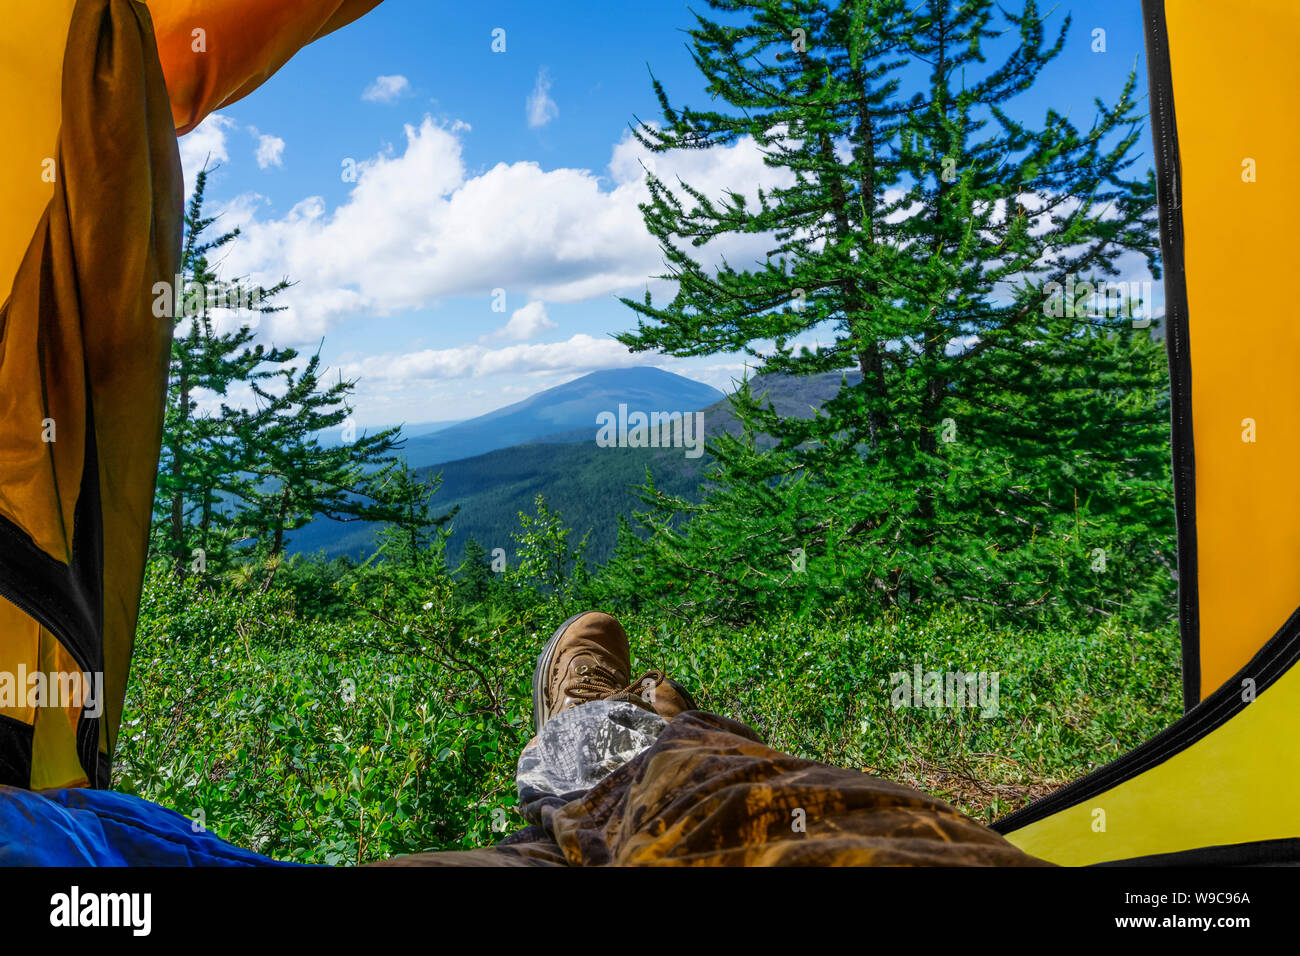 Una mattina di sole in una escursione in montagna - una vista da un turista tenda; le gambe di un escursionista giacenti in esso in scarponi da montagna, sono visibili Foto Stock